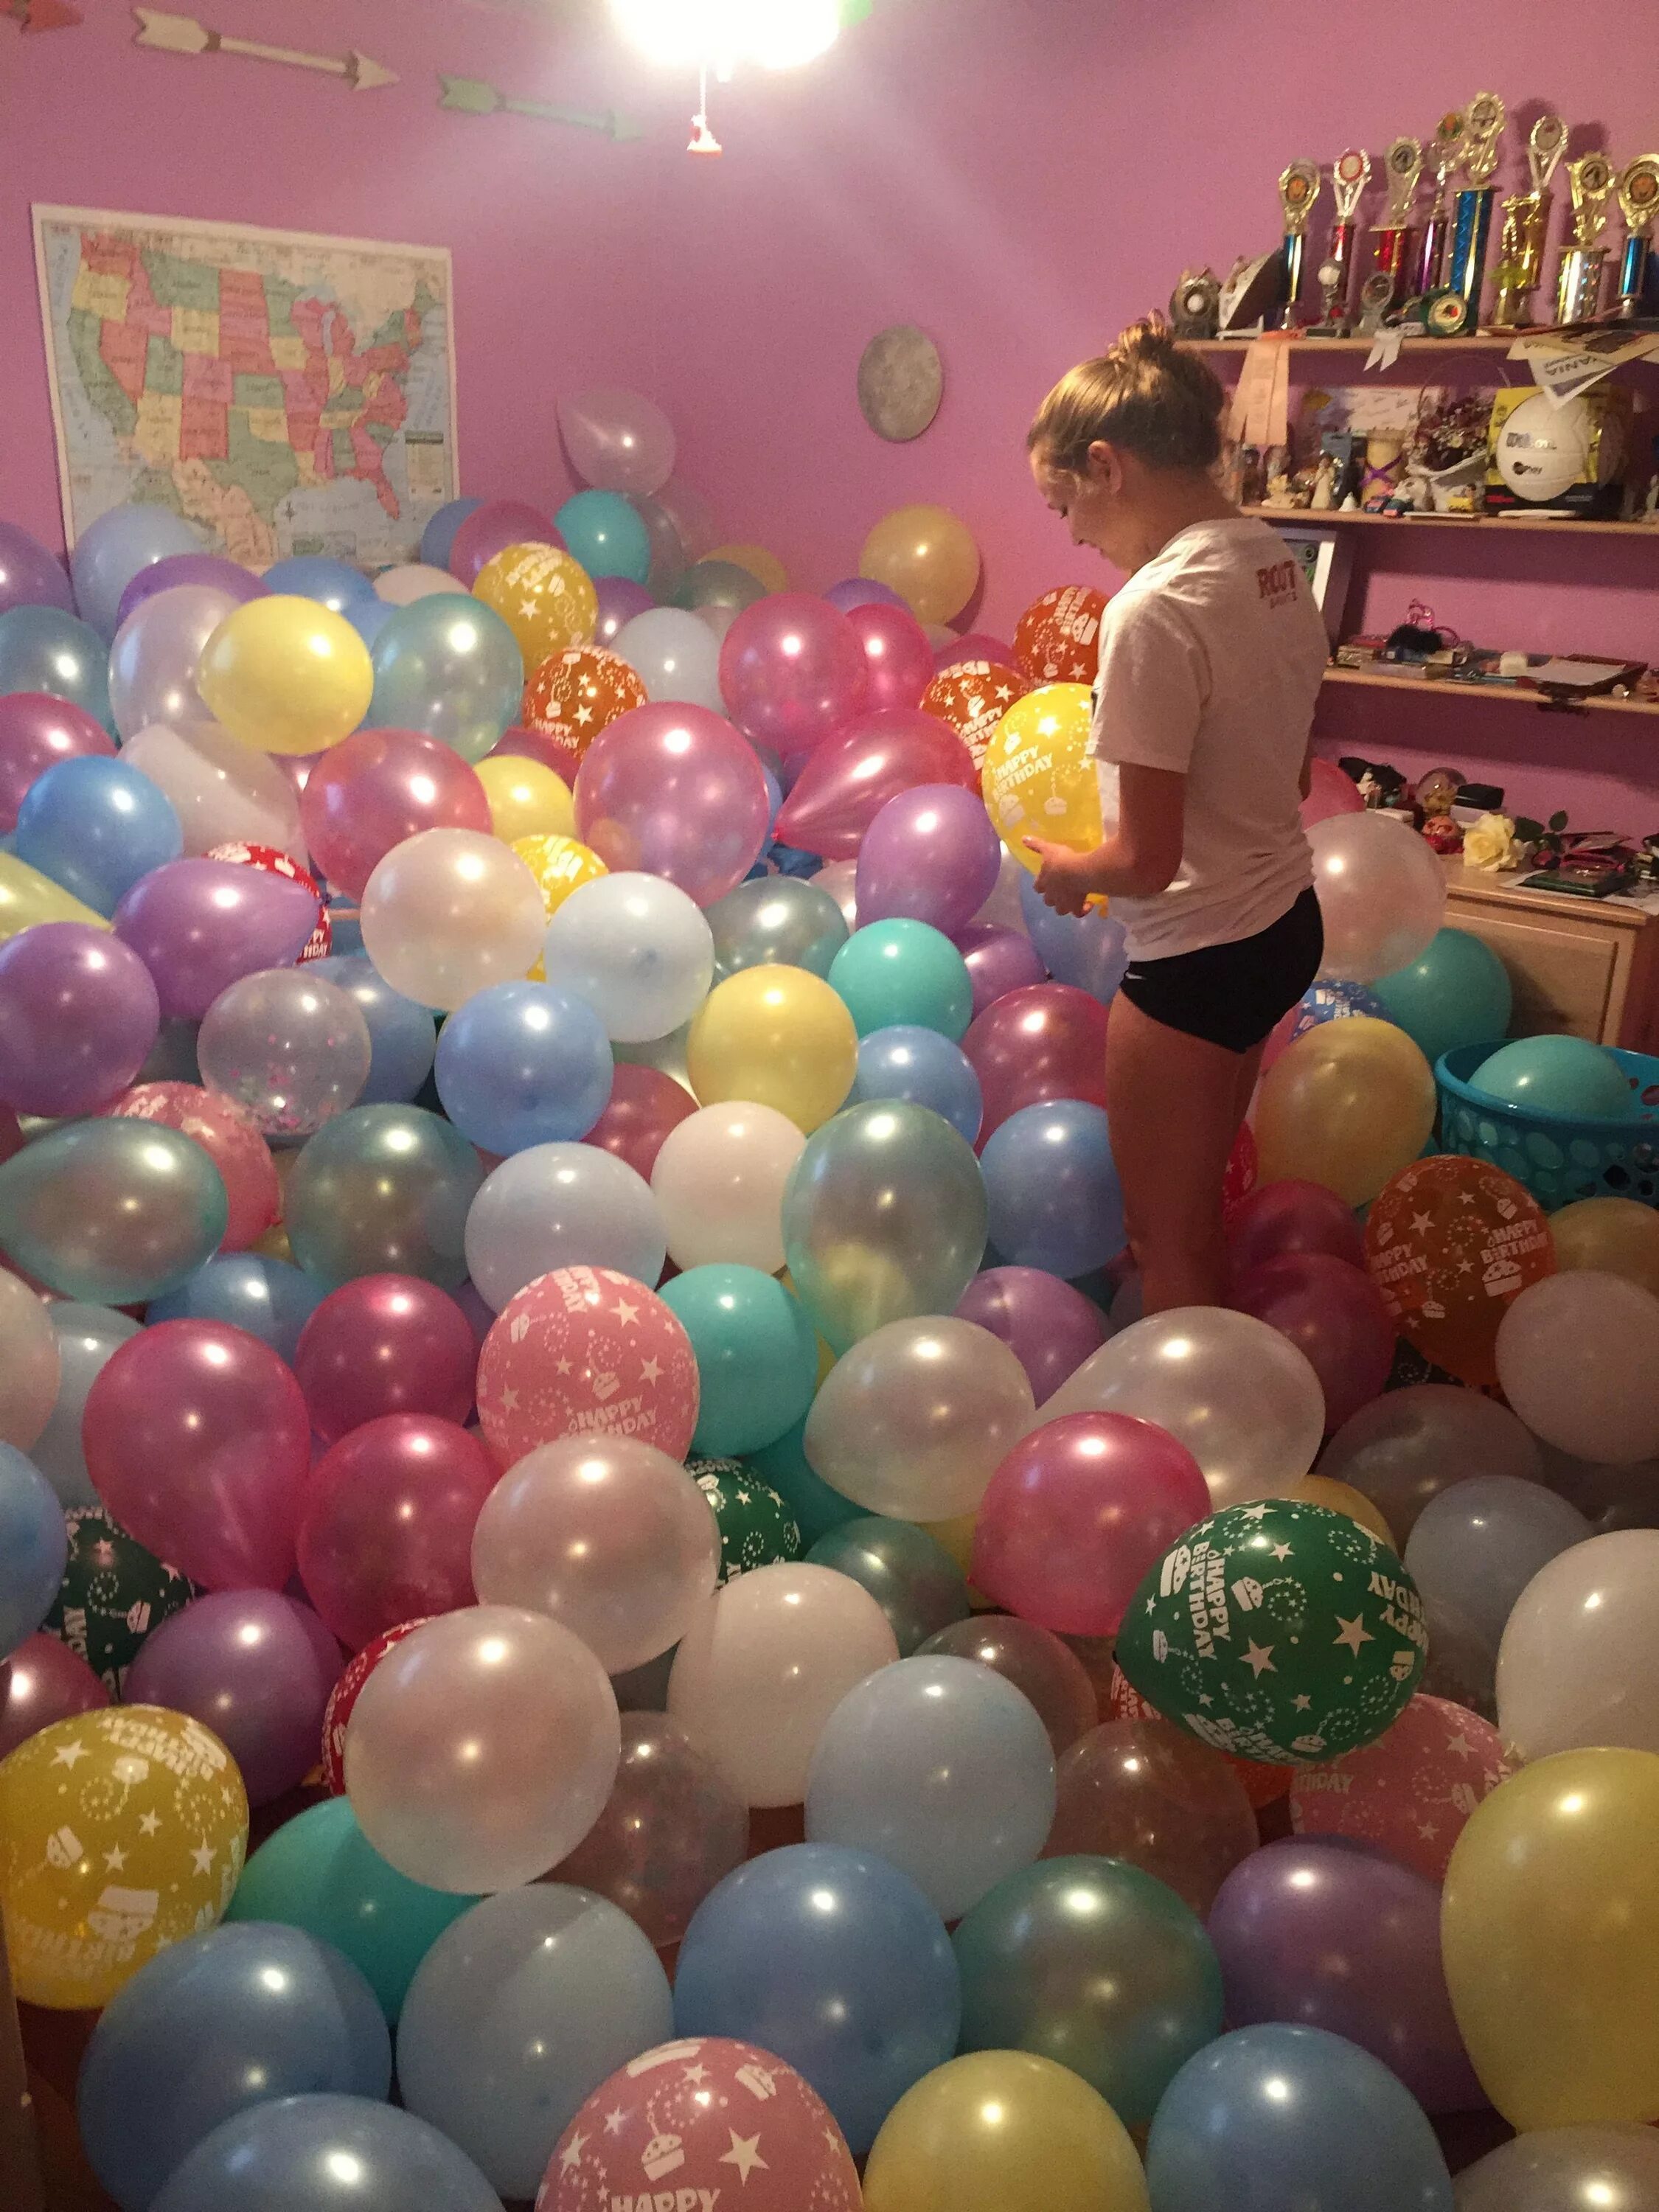 Сто шарами. Шары в комнате. Комната с шарами. Комната с шариками на день рождения. Воздушные шары в комнате.